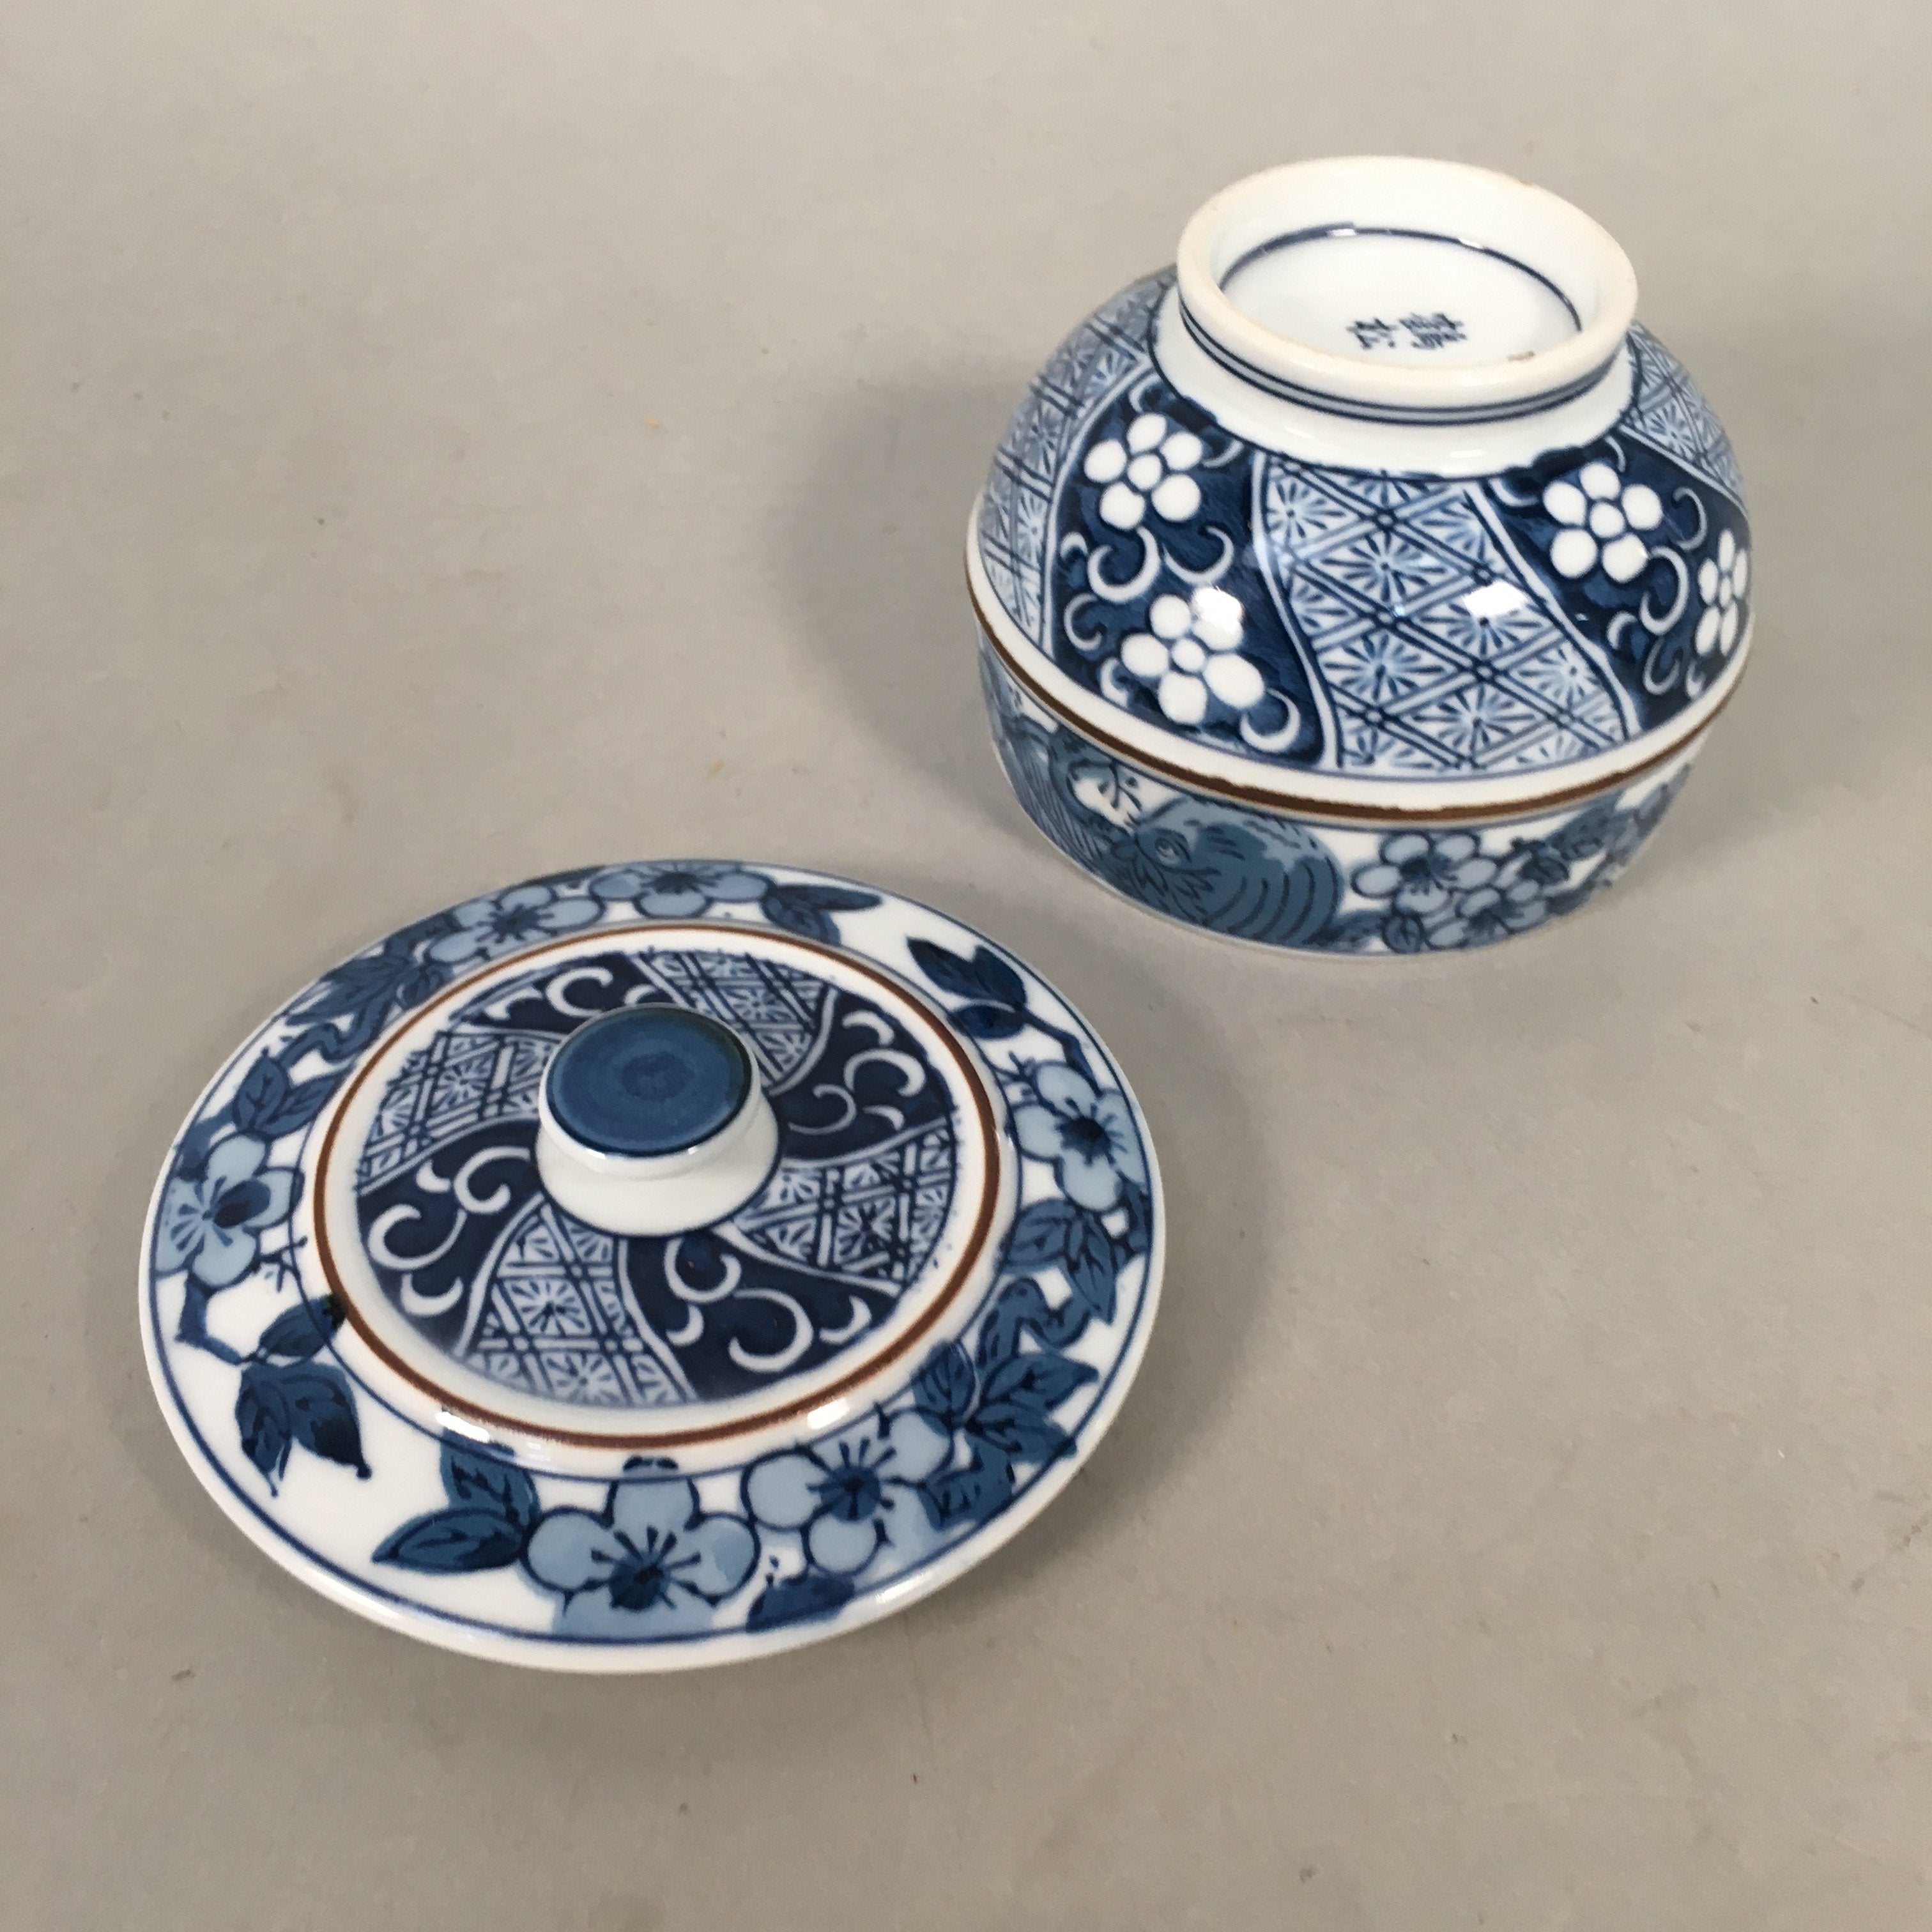 Japanese Porcelain Lidded Teacup Vtg Arita ware Yunomi Blue White Sencha PP416